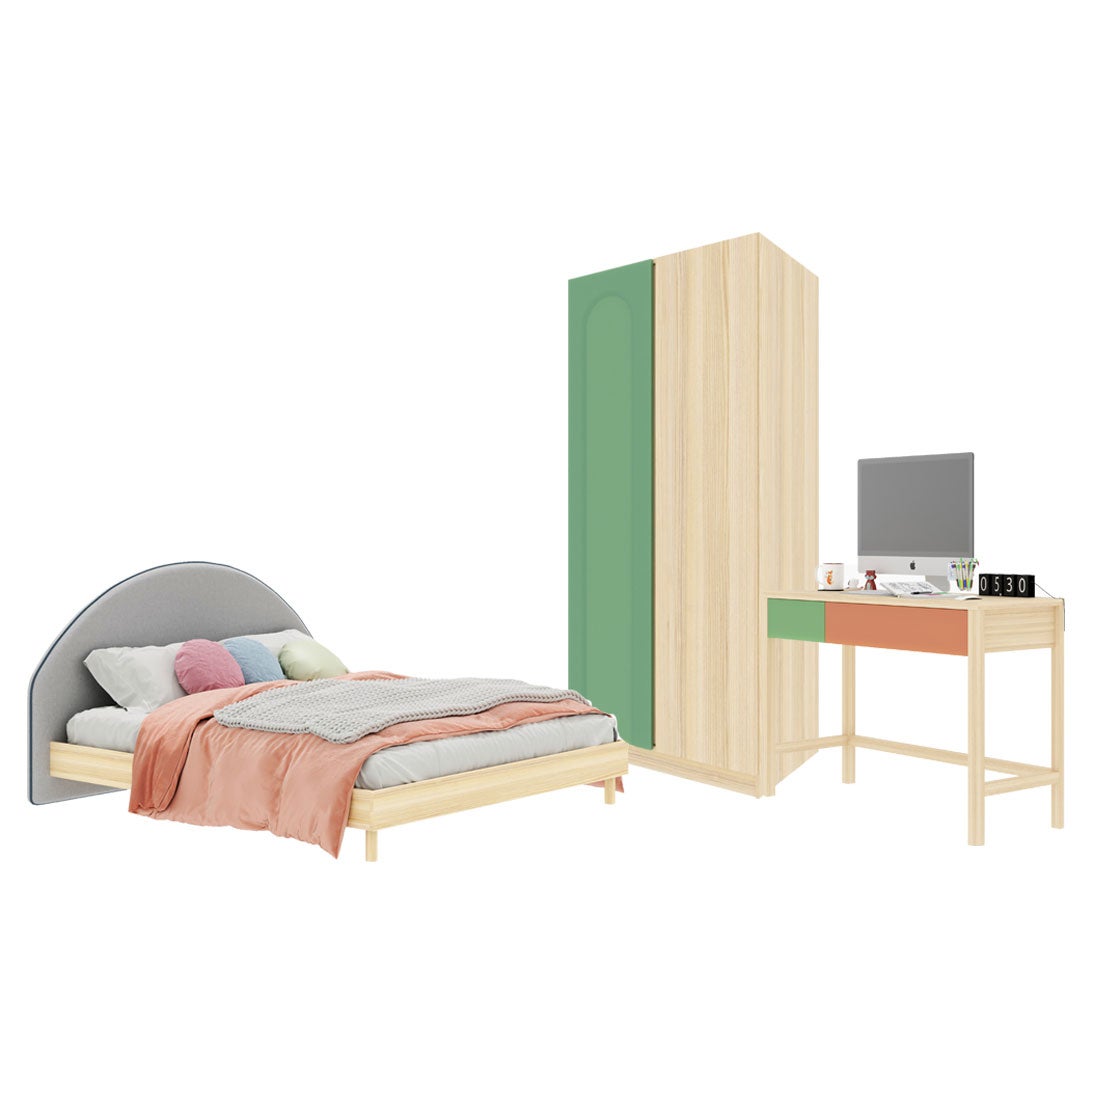 ชุดห้องนอน ขนาด 5 ฟุต-เบาะครีม รุ่น Bingsoo & ตู้เสื้อผ้า 90 ซม. สีเขียว01